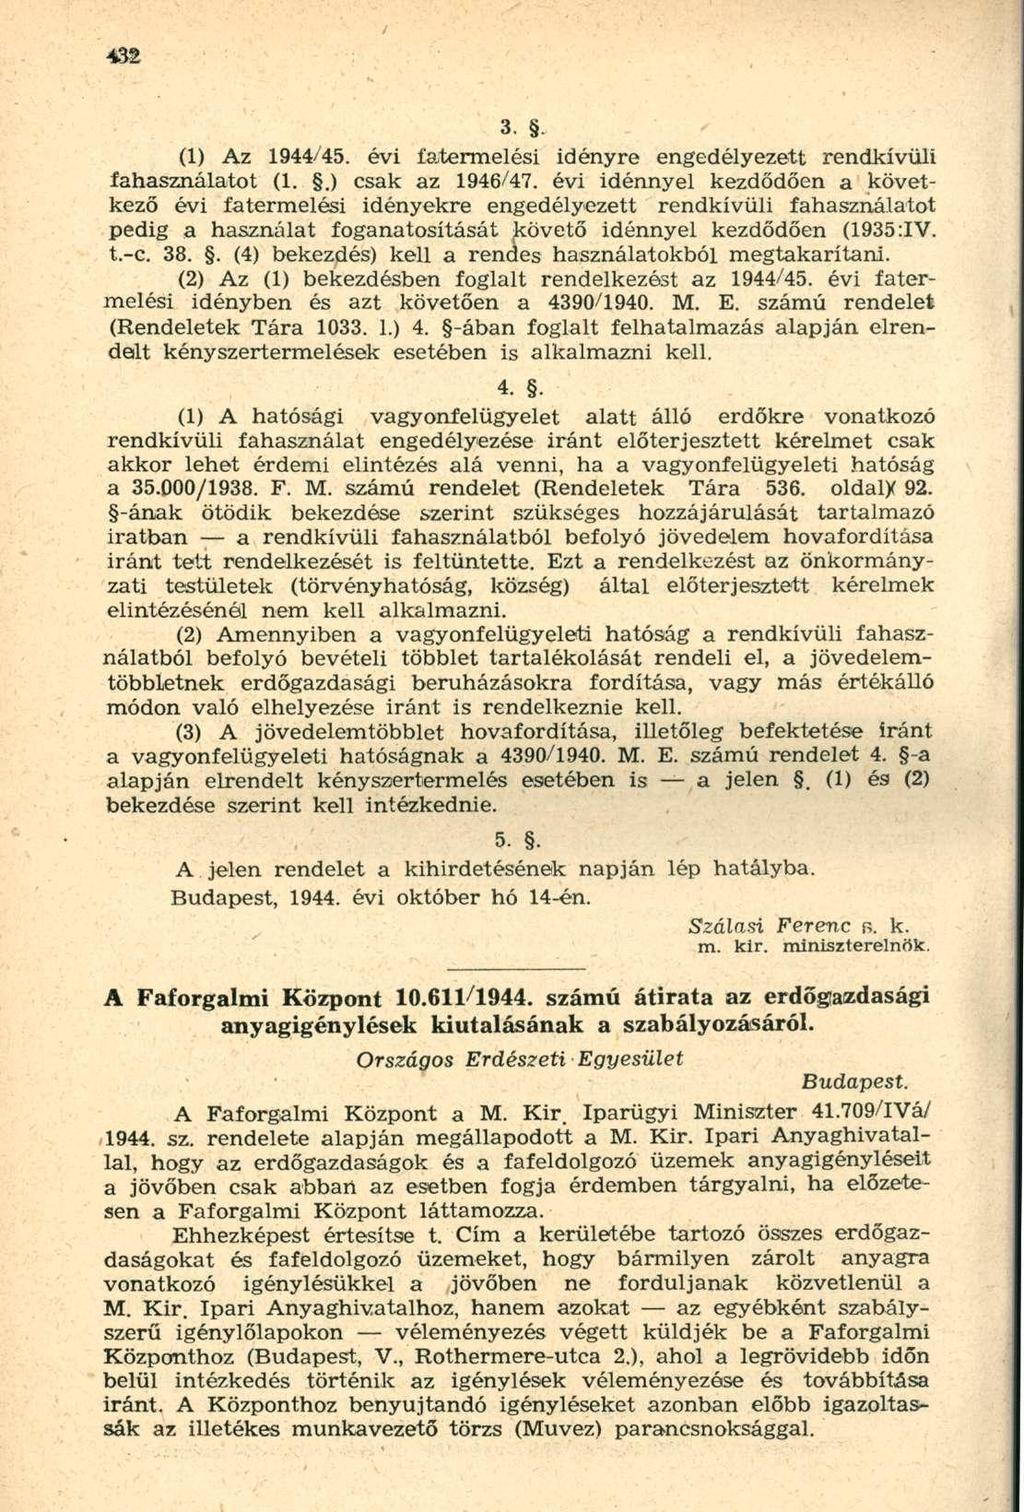 (1) Az 1944/45. évi fatermelési idényre engedélyezett rendkívüli fahasználatot (1..) csak az 1946/47.